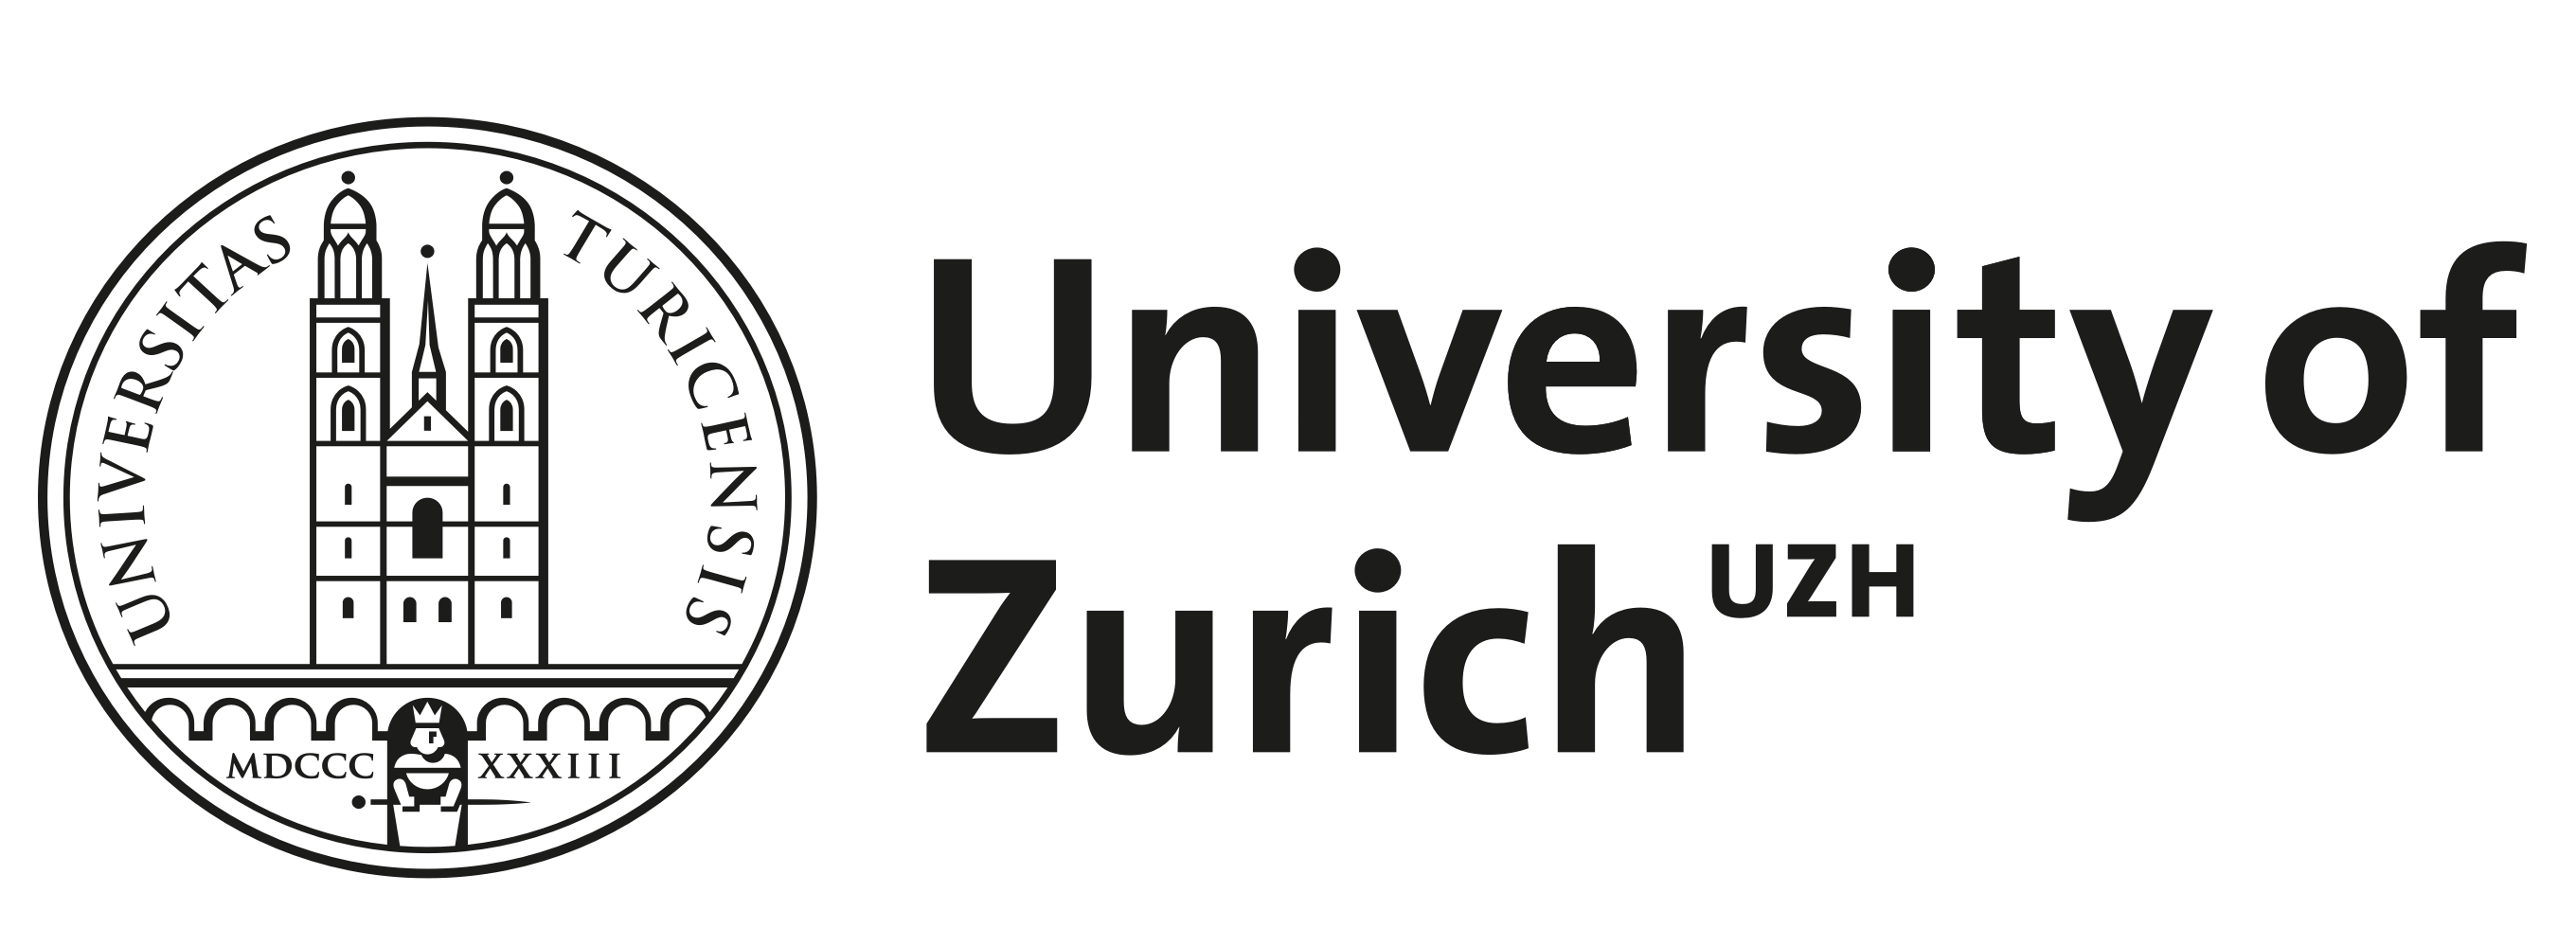 UZH - Universität Zürich - University of Zurich